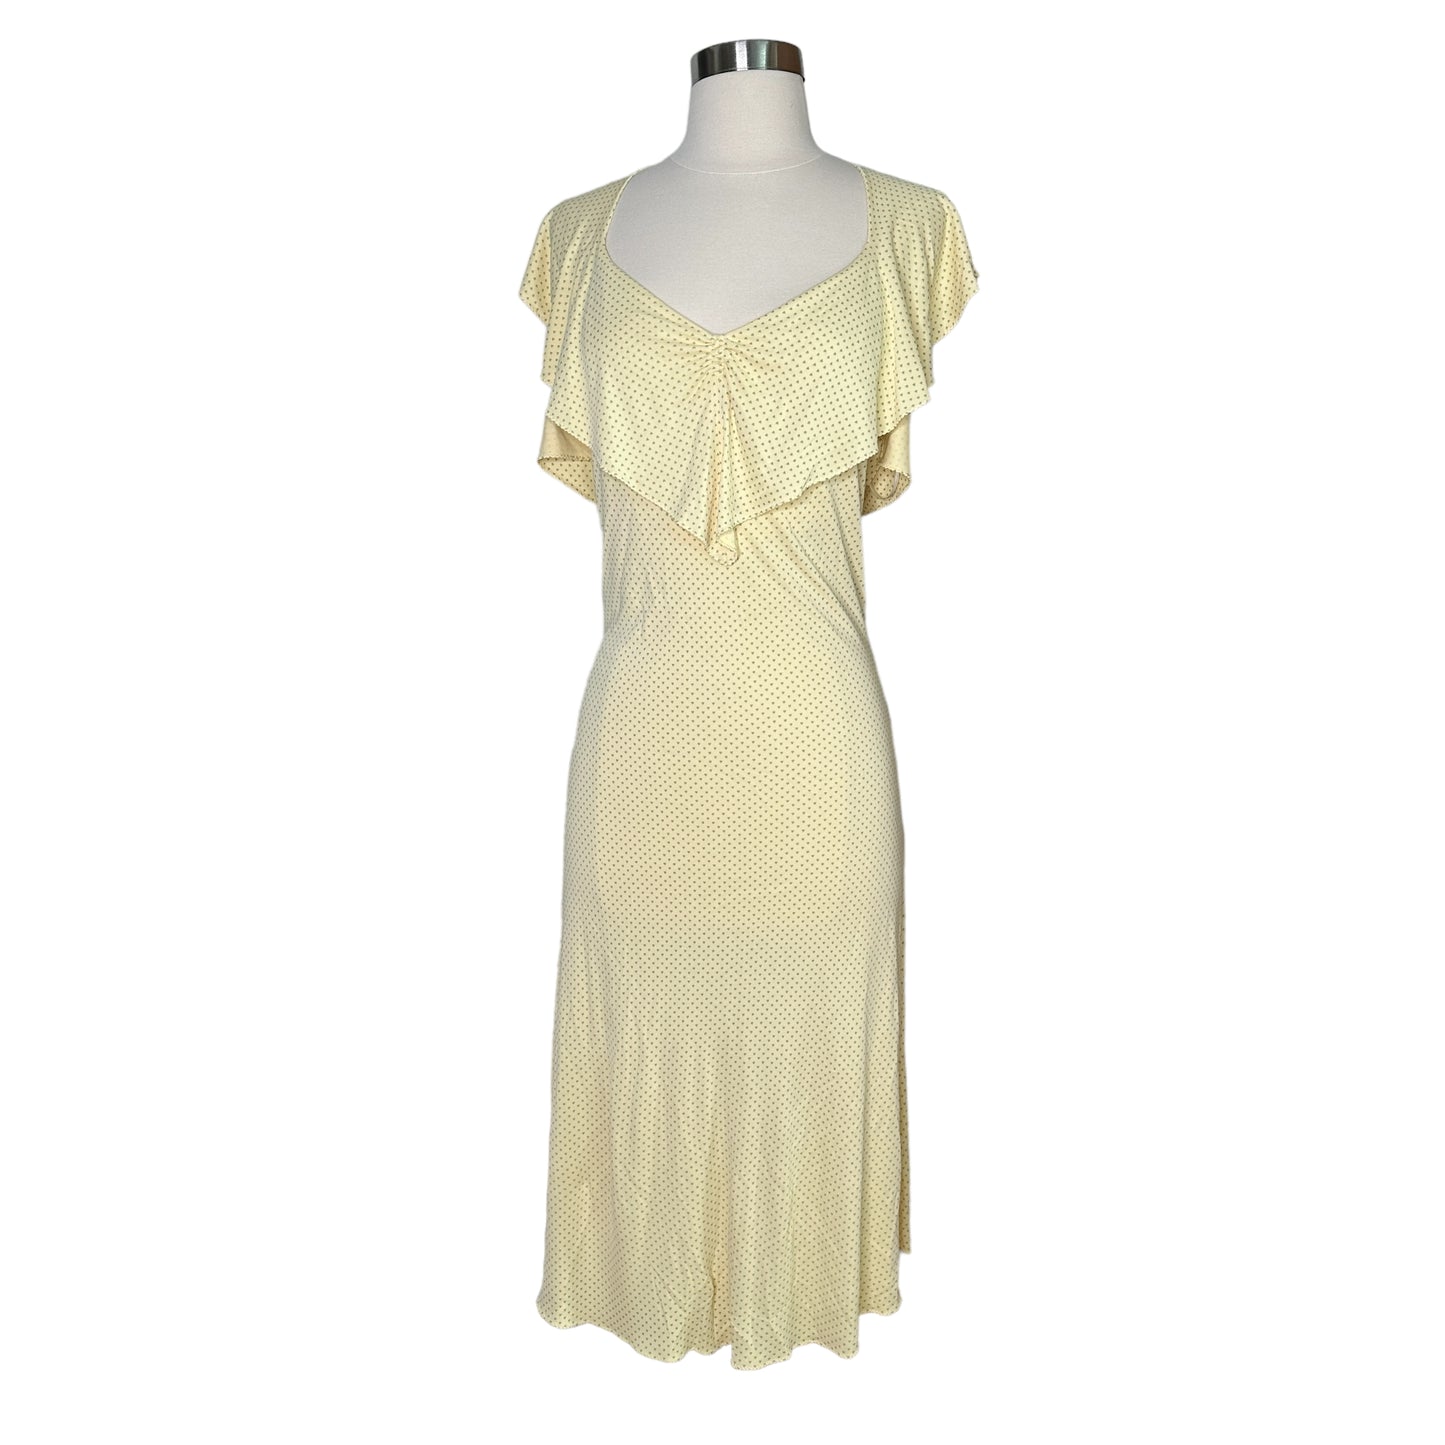 Pale Yellow Vintage Dress - M